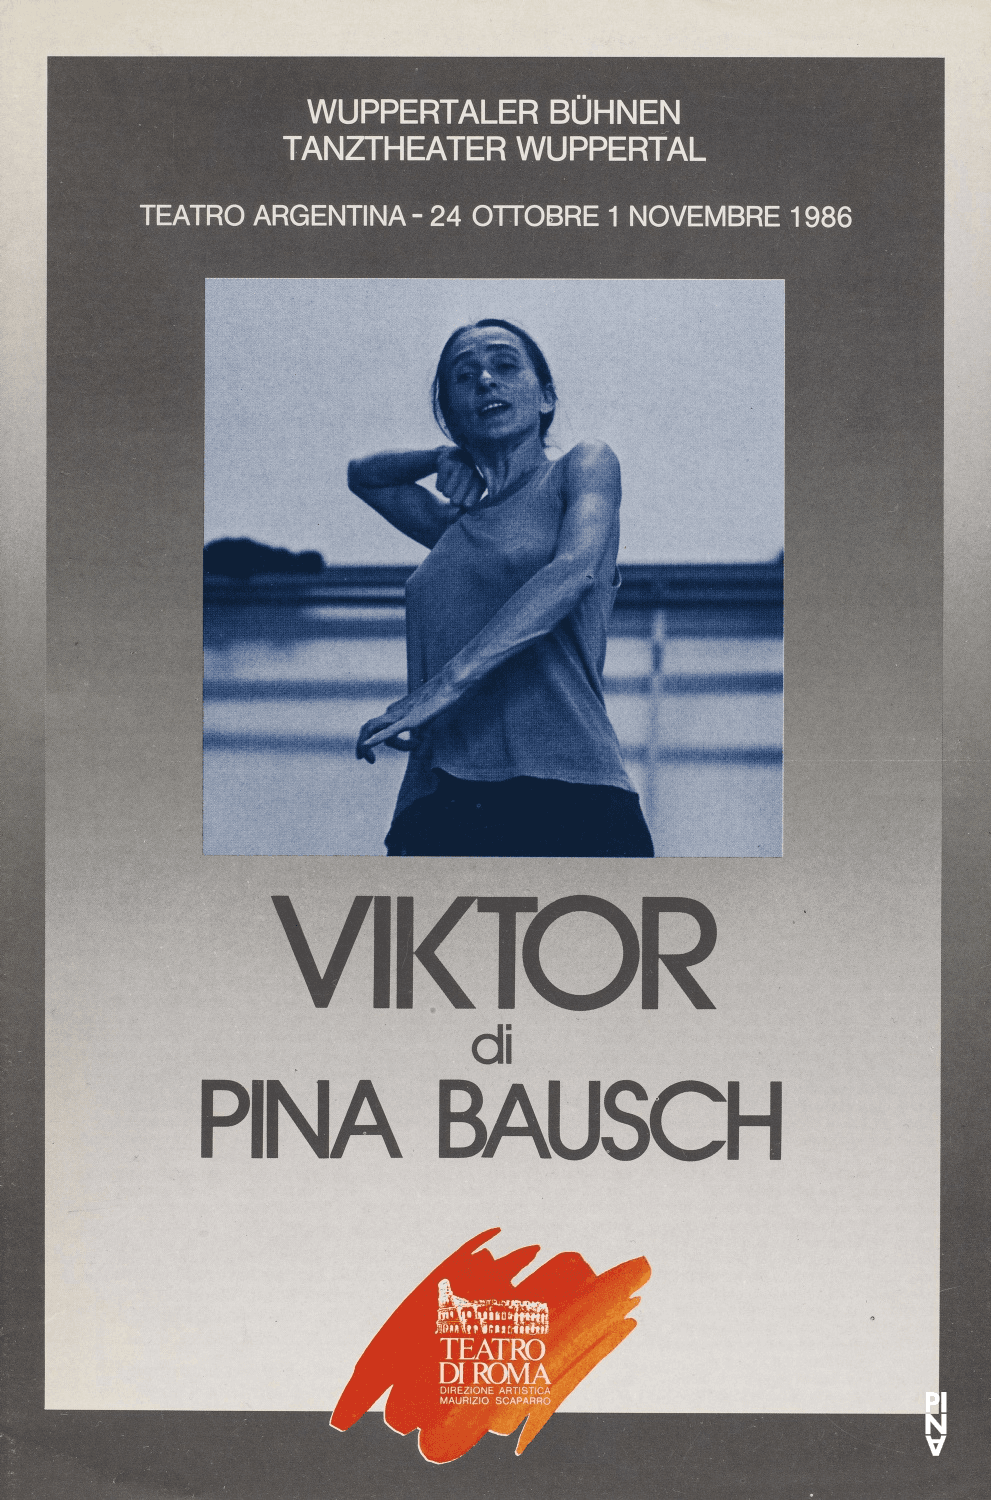 Programme pour « Viktor » de Pina Bausch avec Tanztheater Wuppertal à Rome, 24 oct. 1986 – 1 nov. 1986